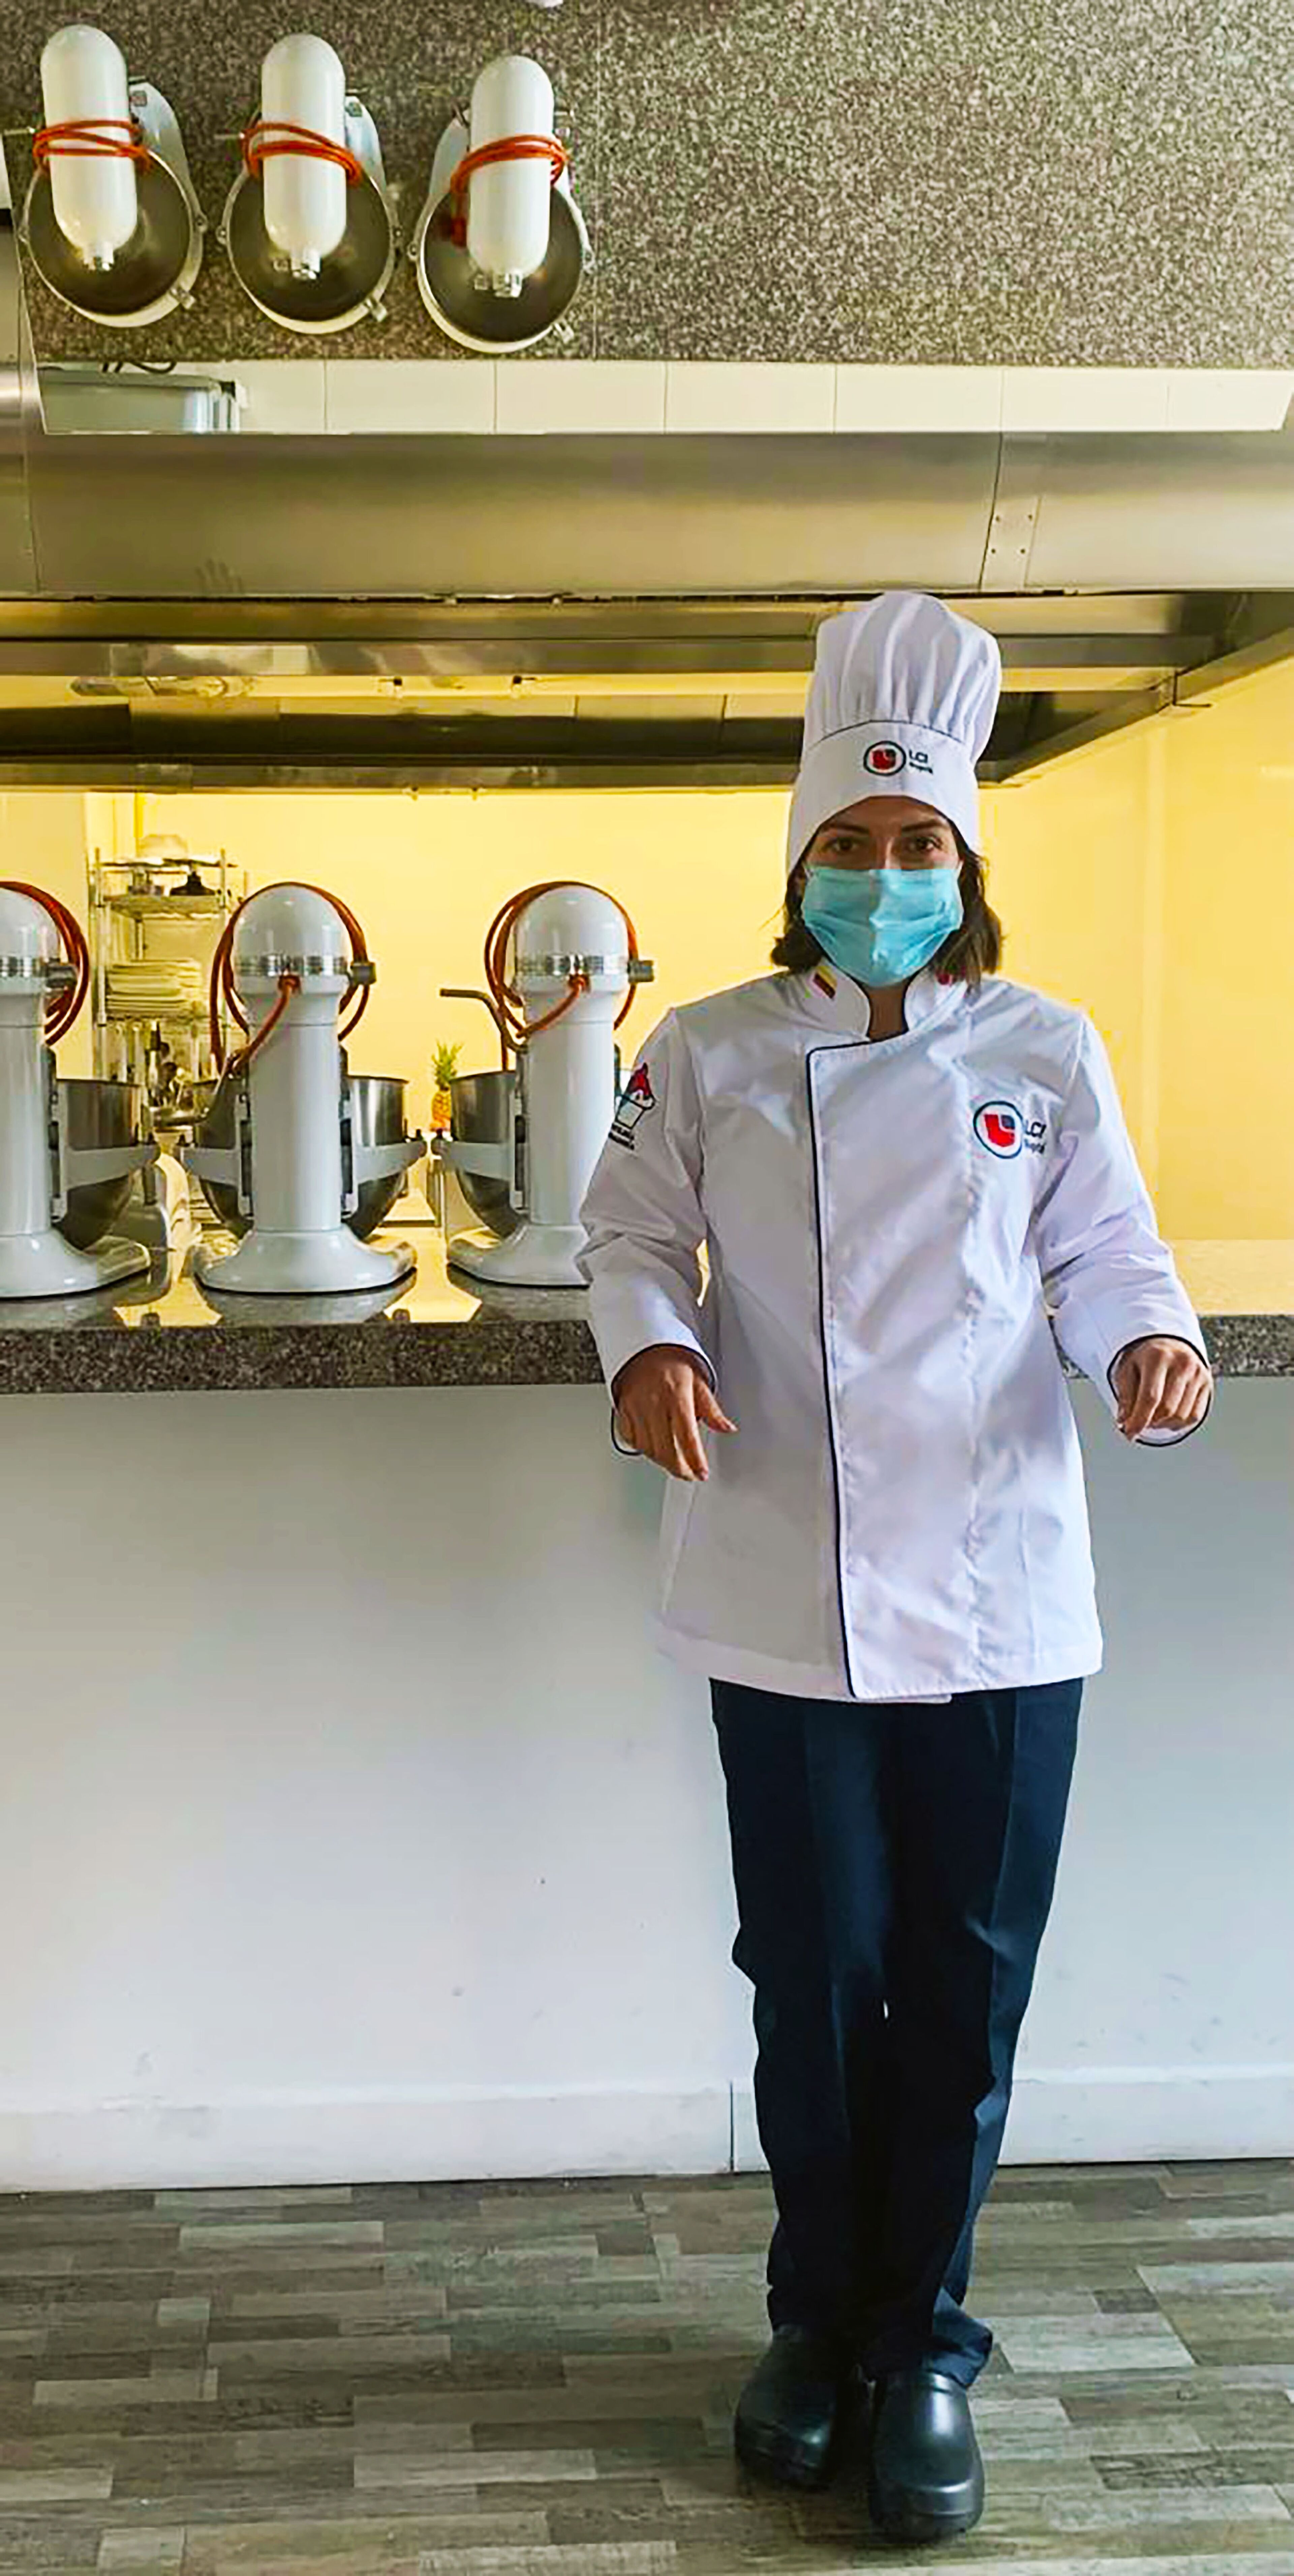 Un(a) chef profesional en uniforme blanco y gorro se encuentra en una cocina comercial, llevando mascarilla por seguridad sanitaria.